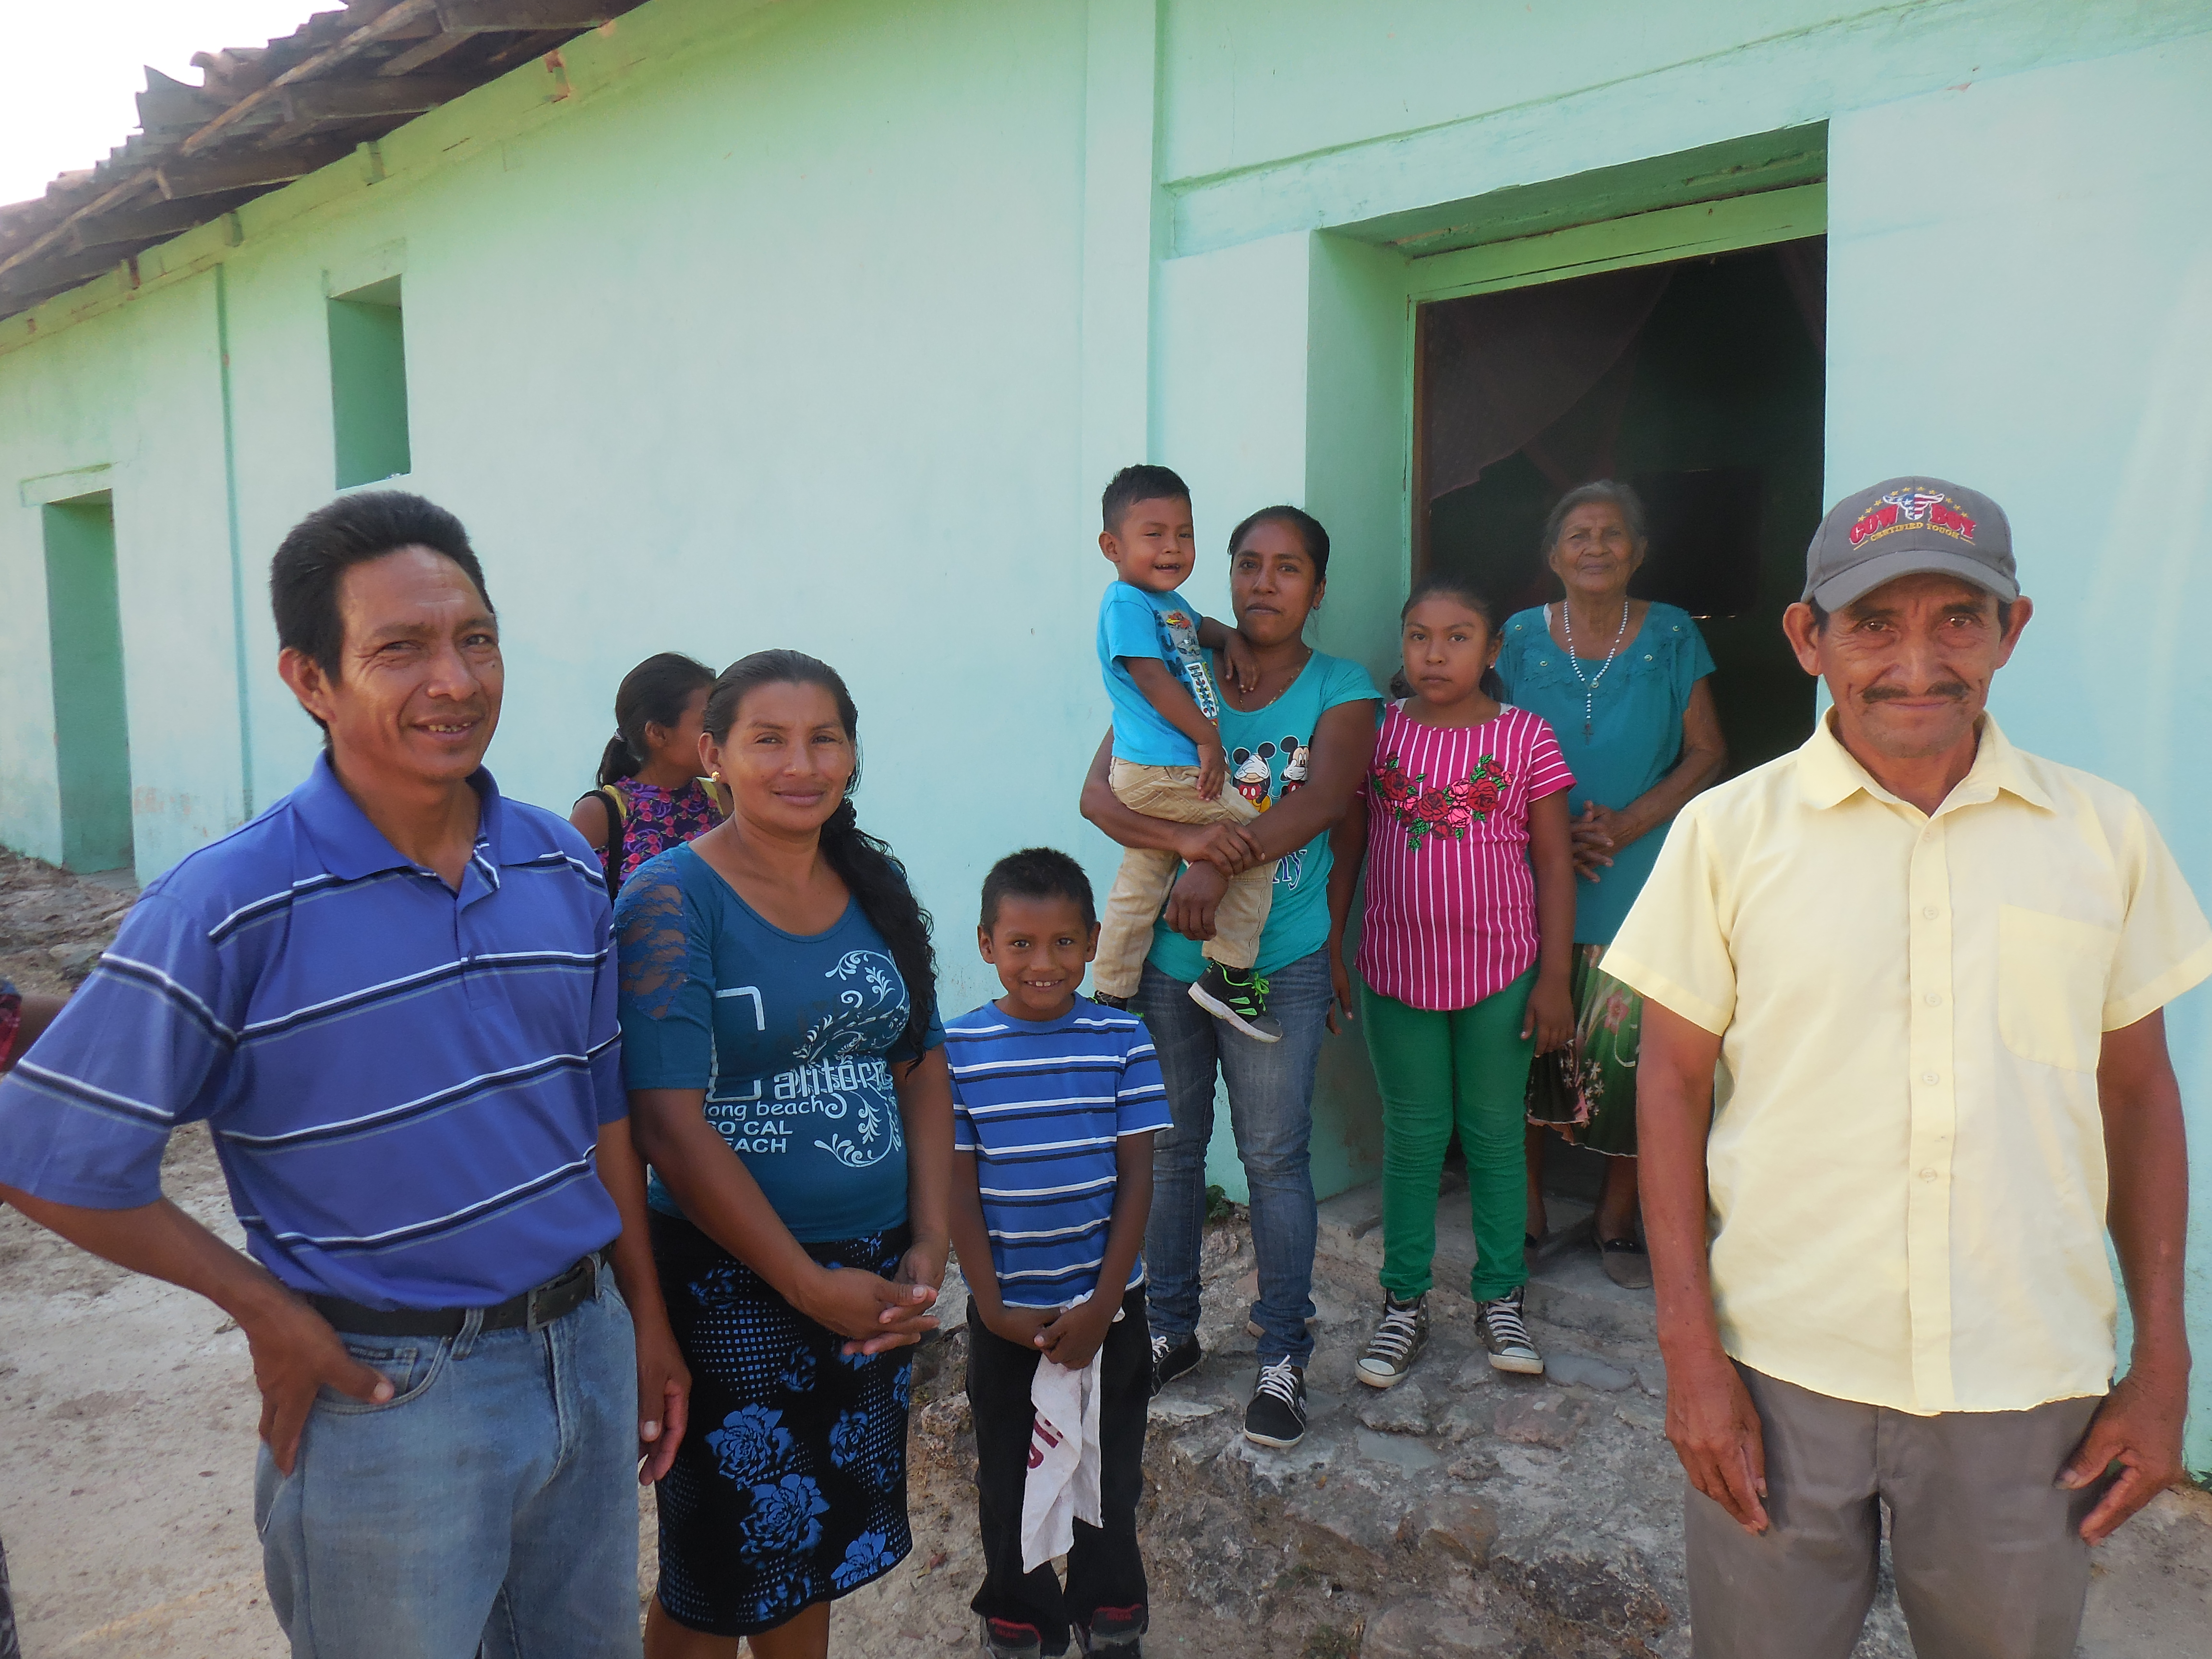 Llano Samalares Community